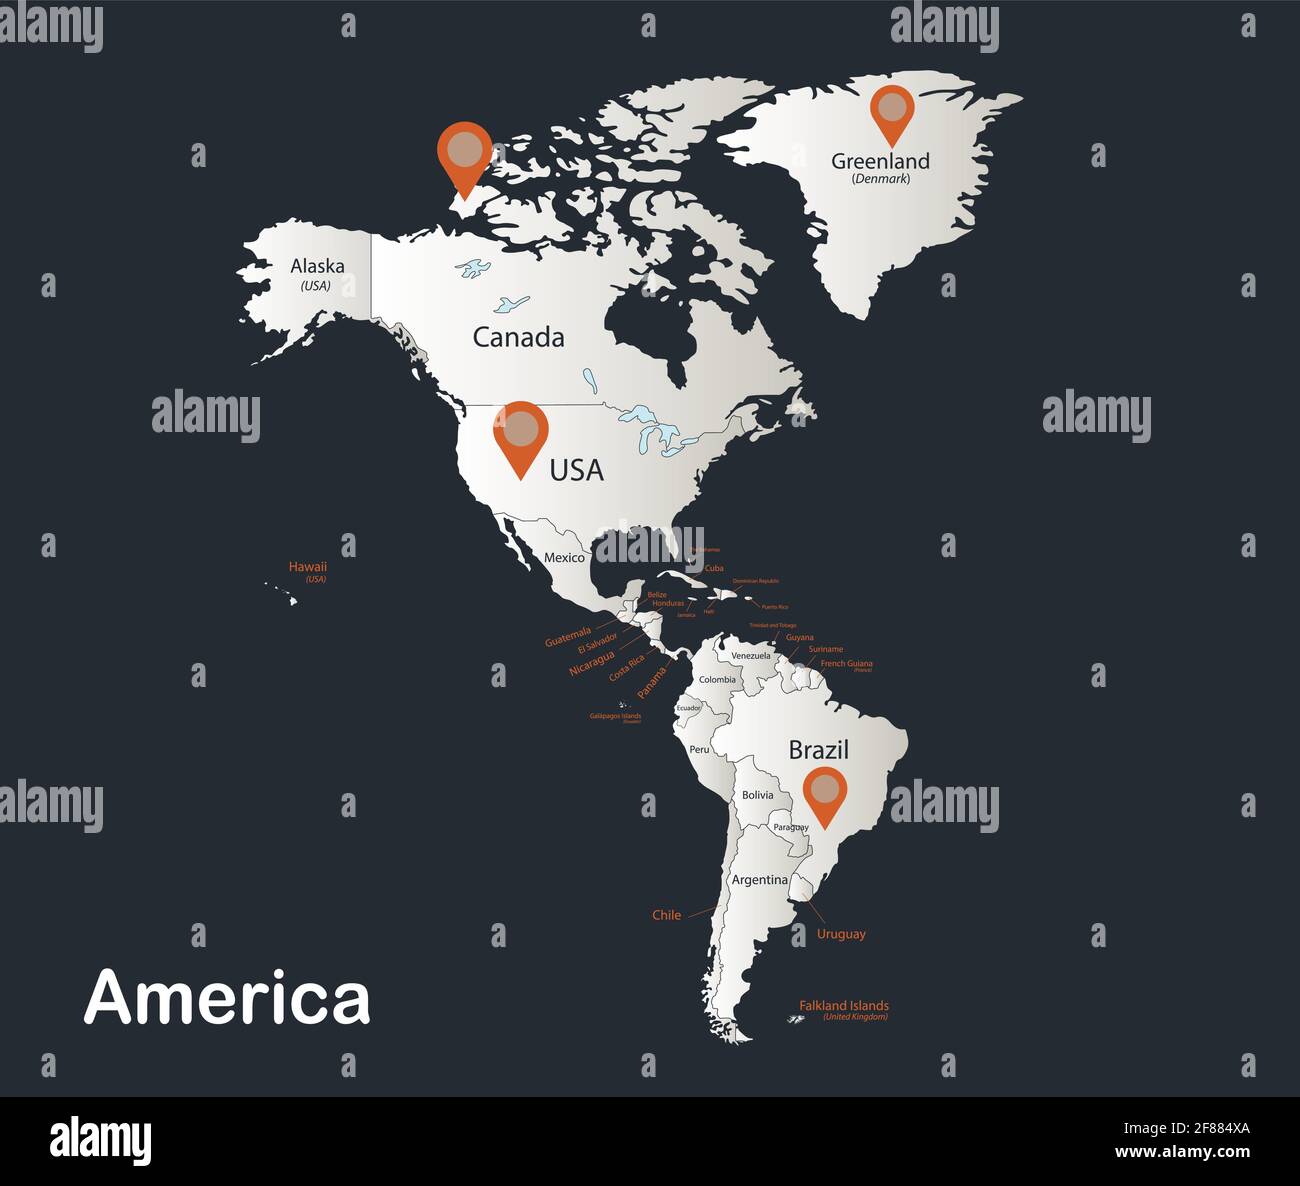 Amerika Karte, Infografiken flaches Design Farben schneeweiß, mit Namen der einzelnen Zustände Vektor Stock Vektor